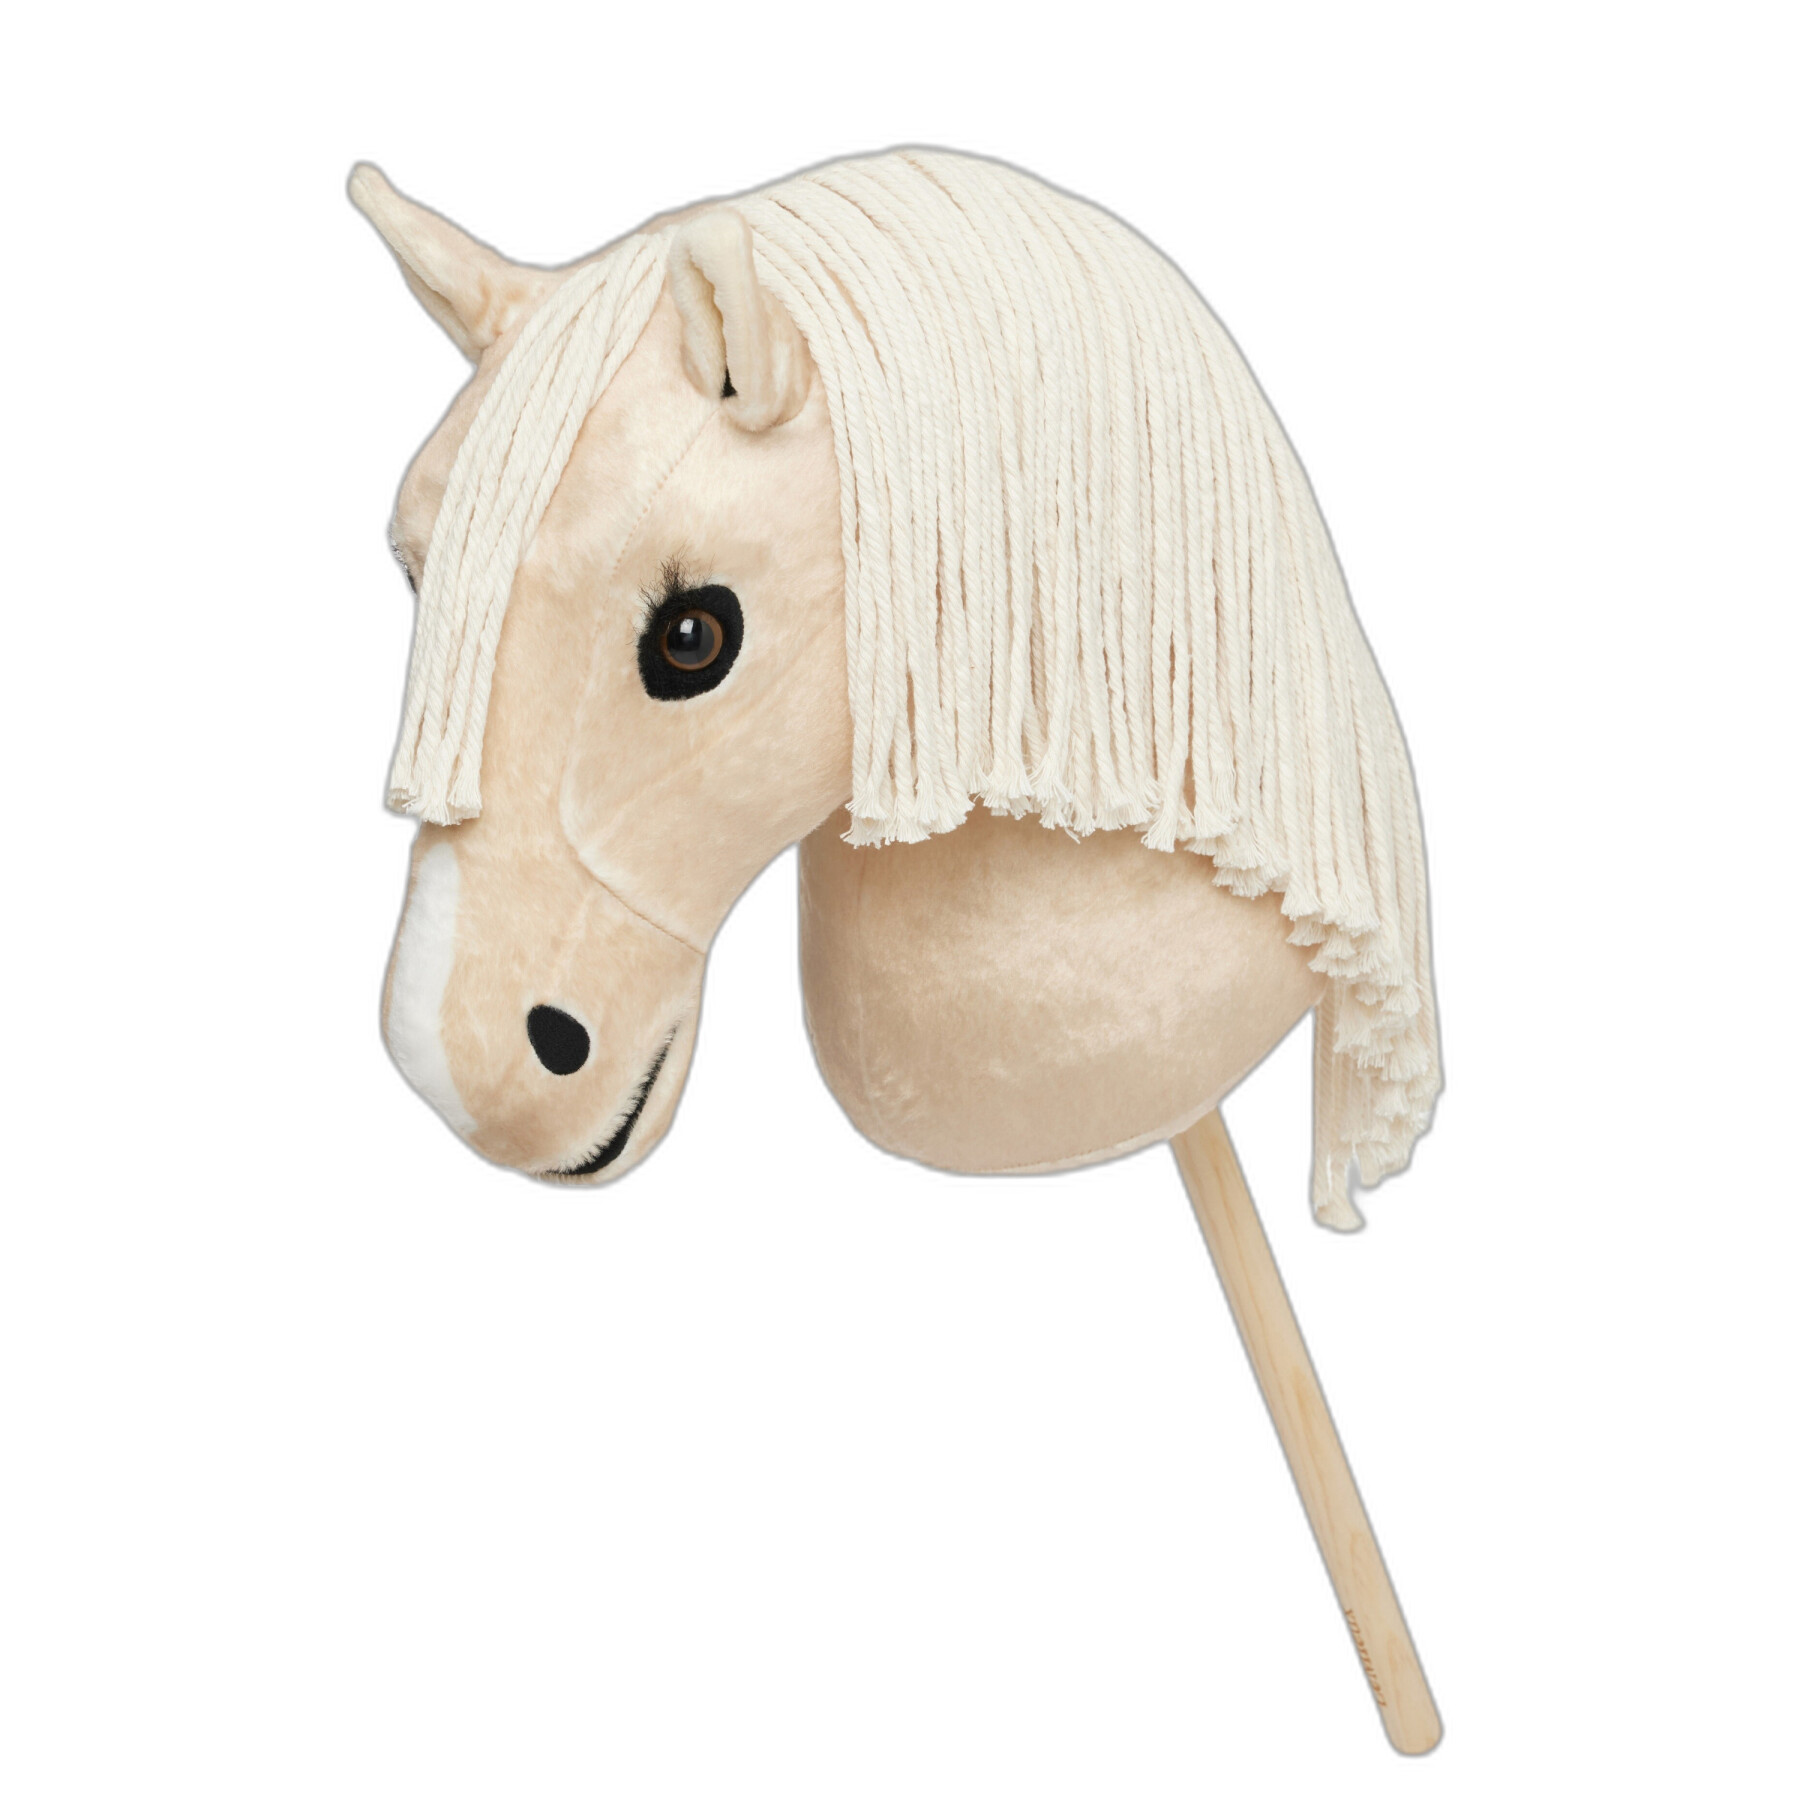 Spielzeug für Pferde LeMieux Hobby Horse Popcorn